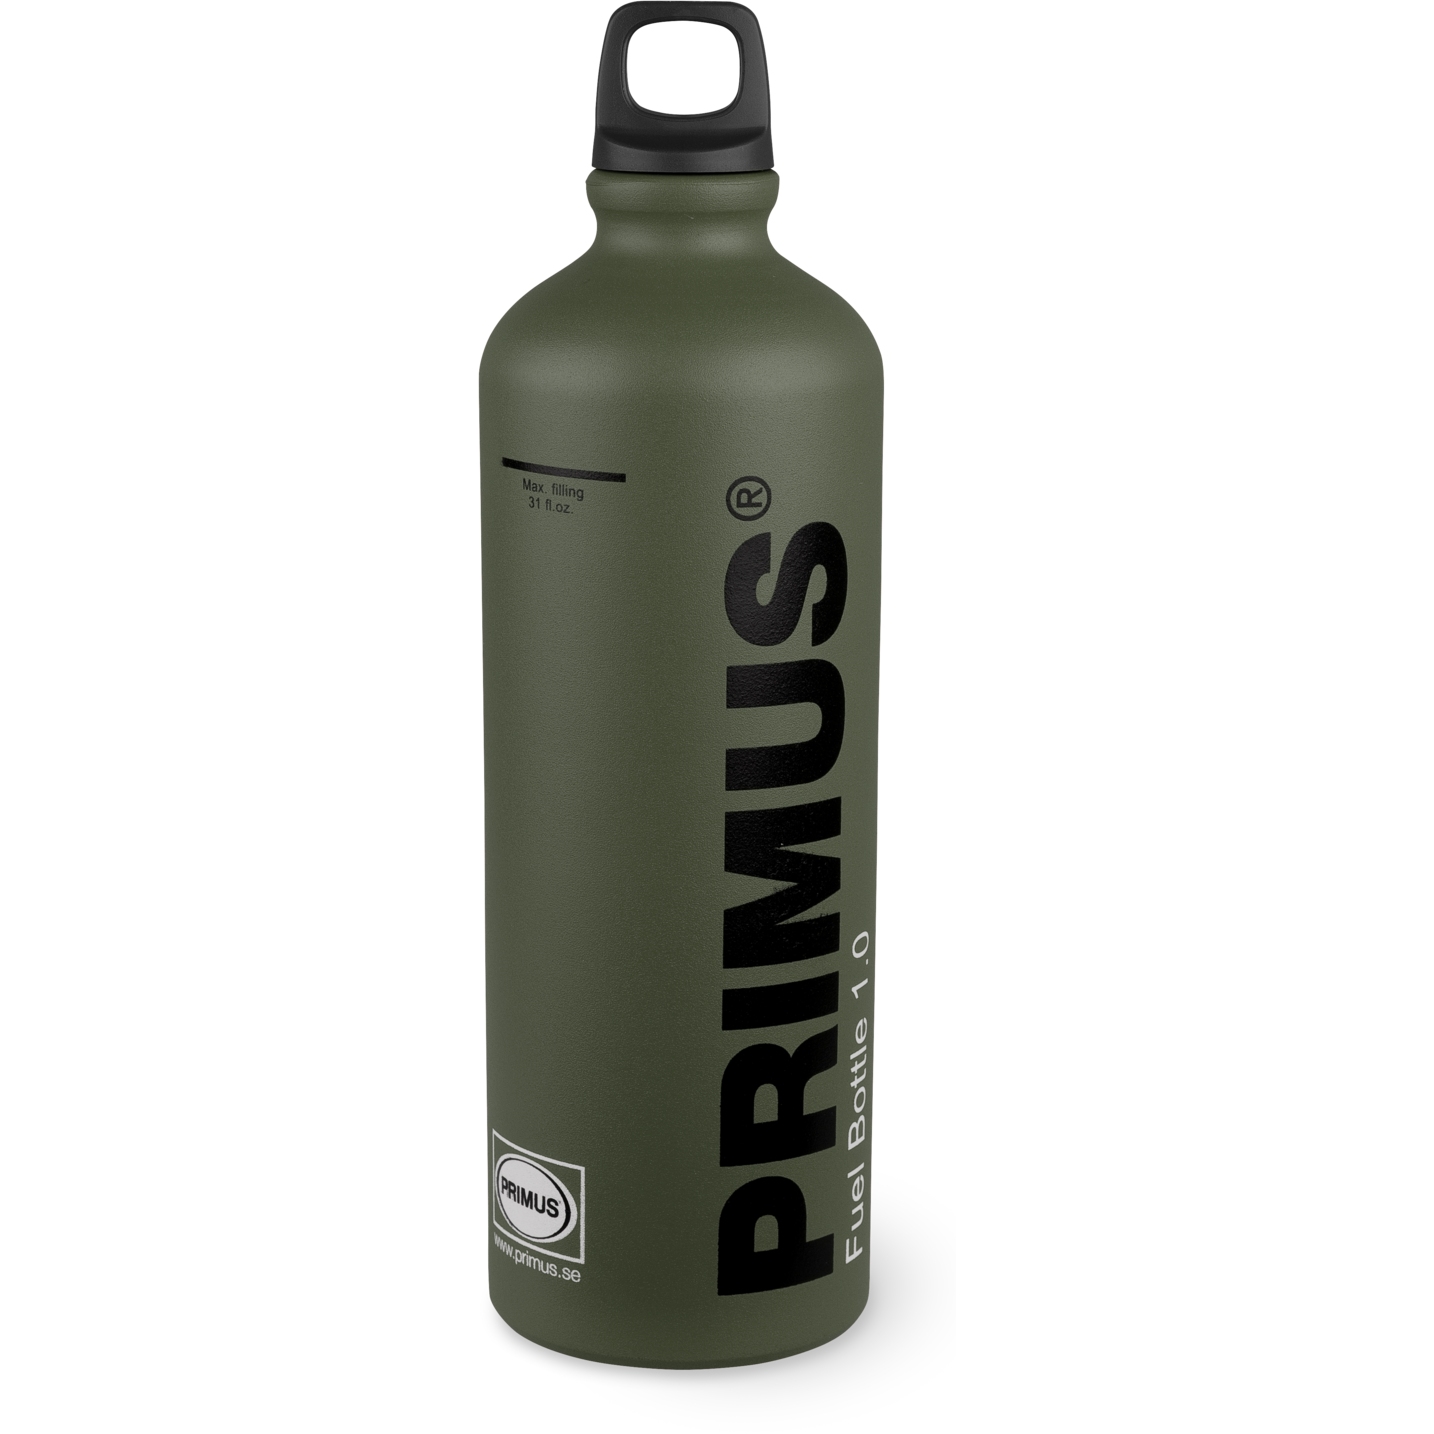 Produktbild von Primus Fuel Bottle 1.0L Brennstoffflasche - grün